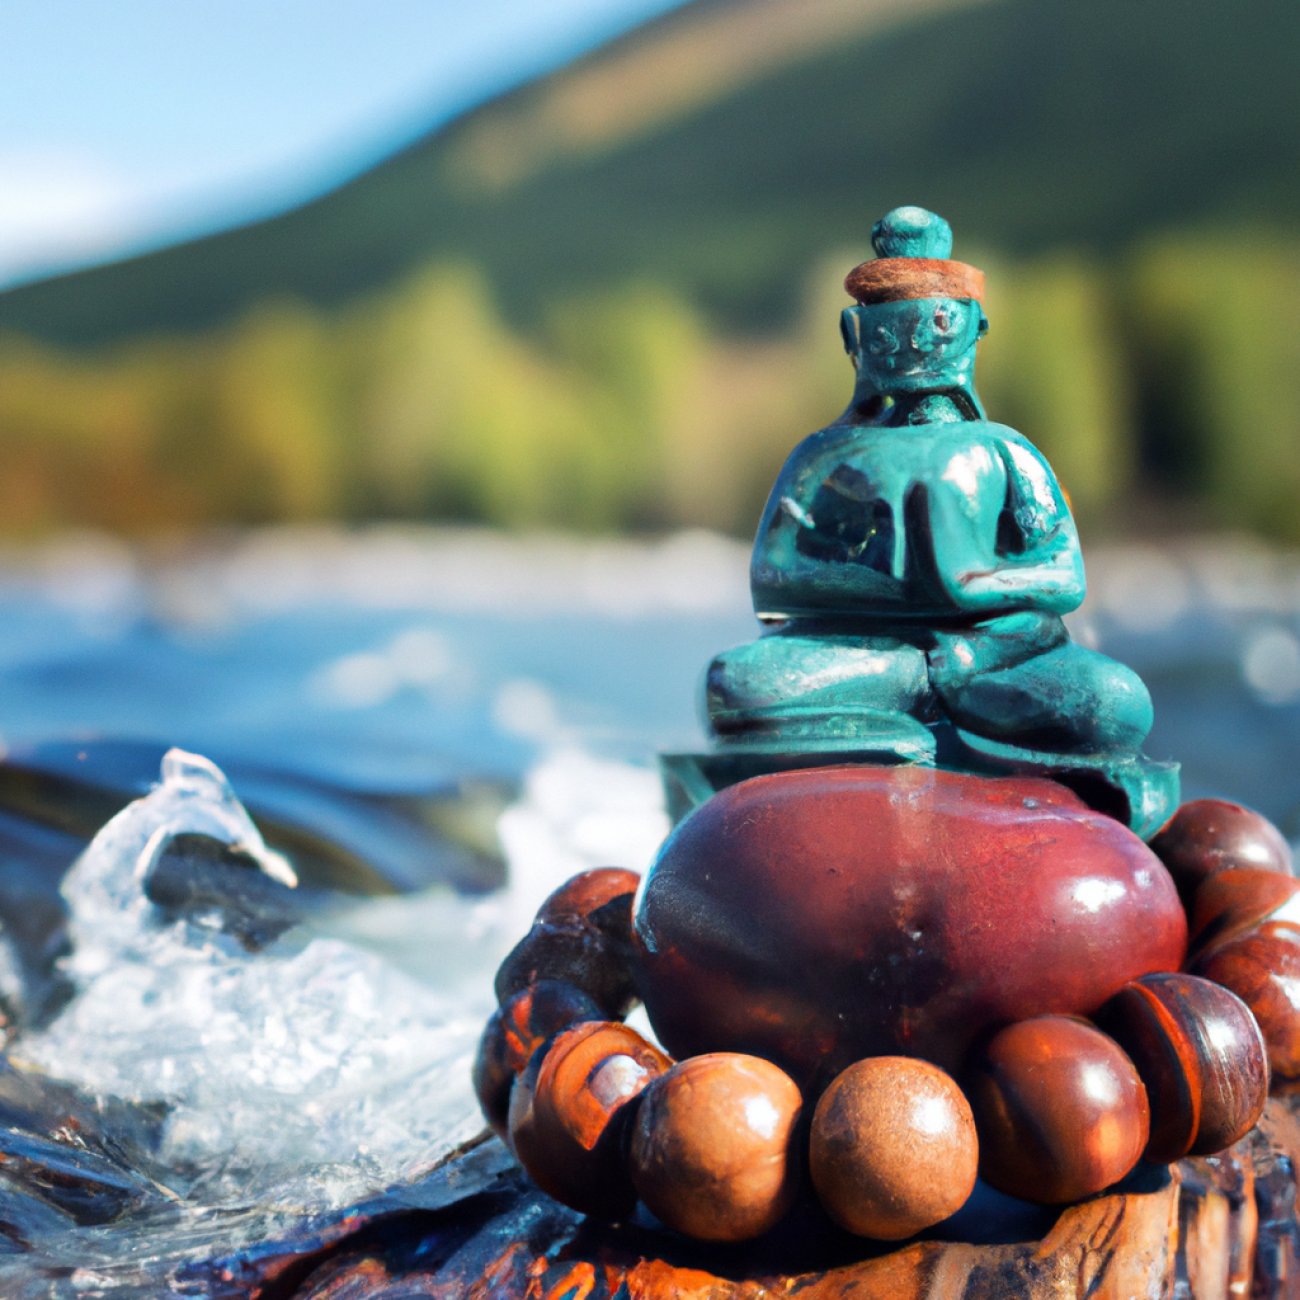 Naučte se nalézt klid v hektickém světě pomocí meditace v Jinonicích